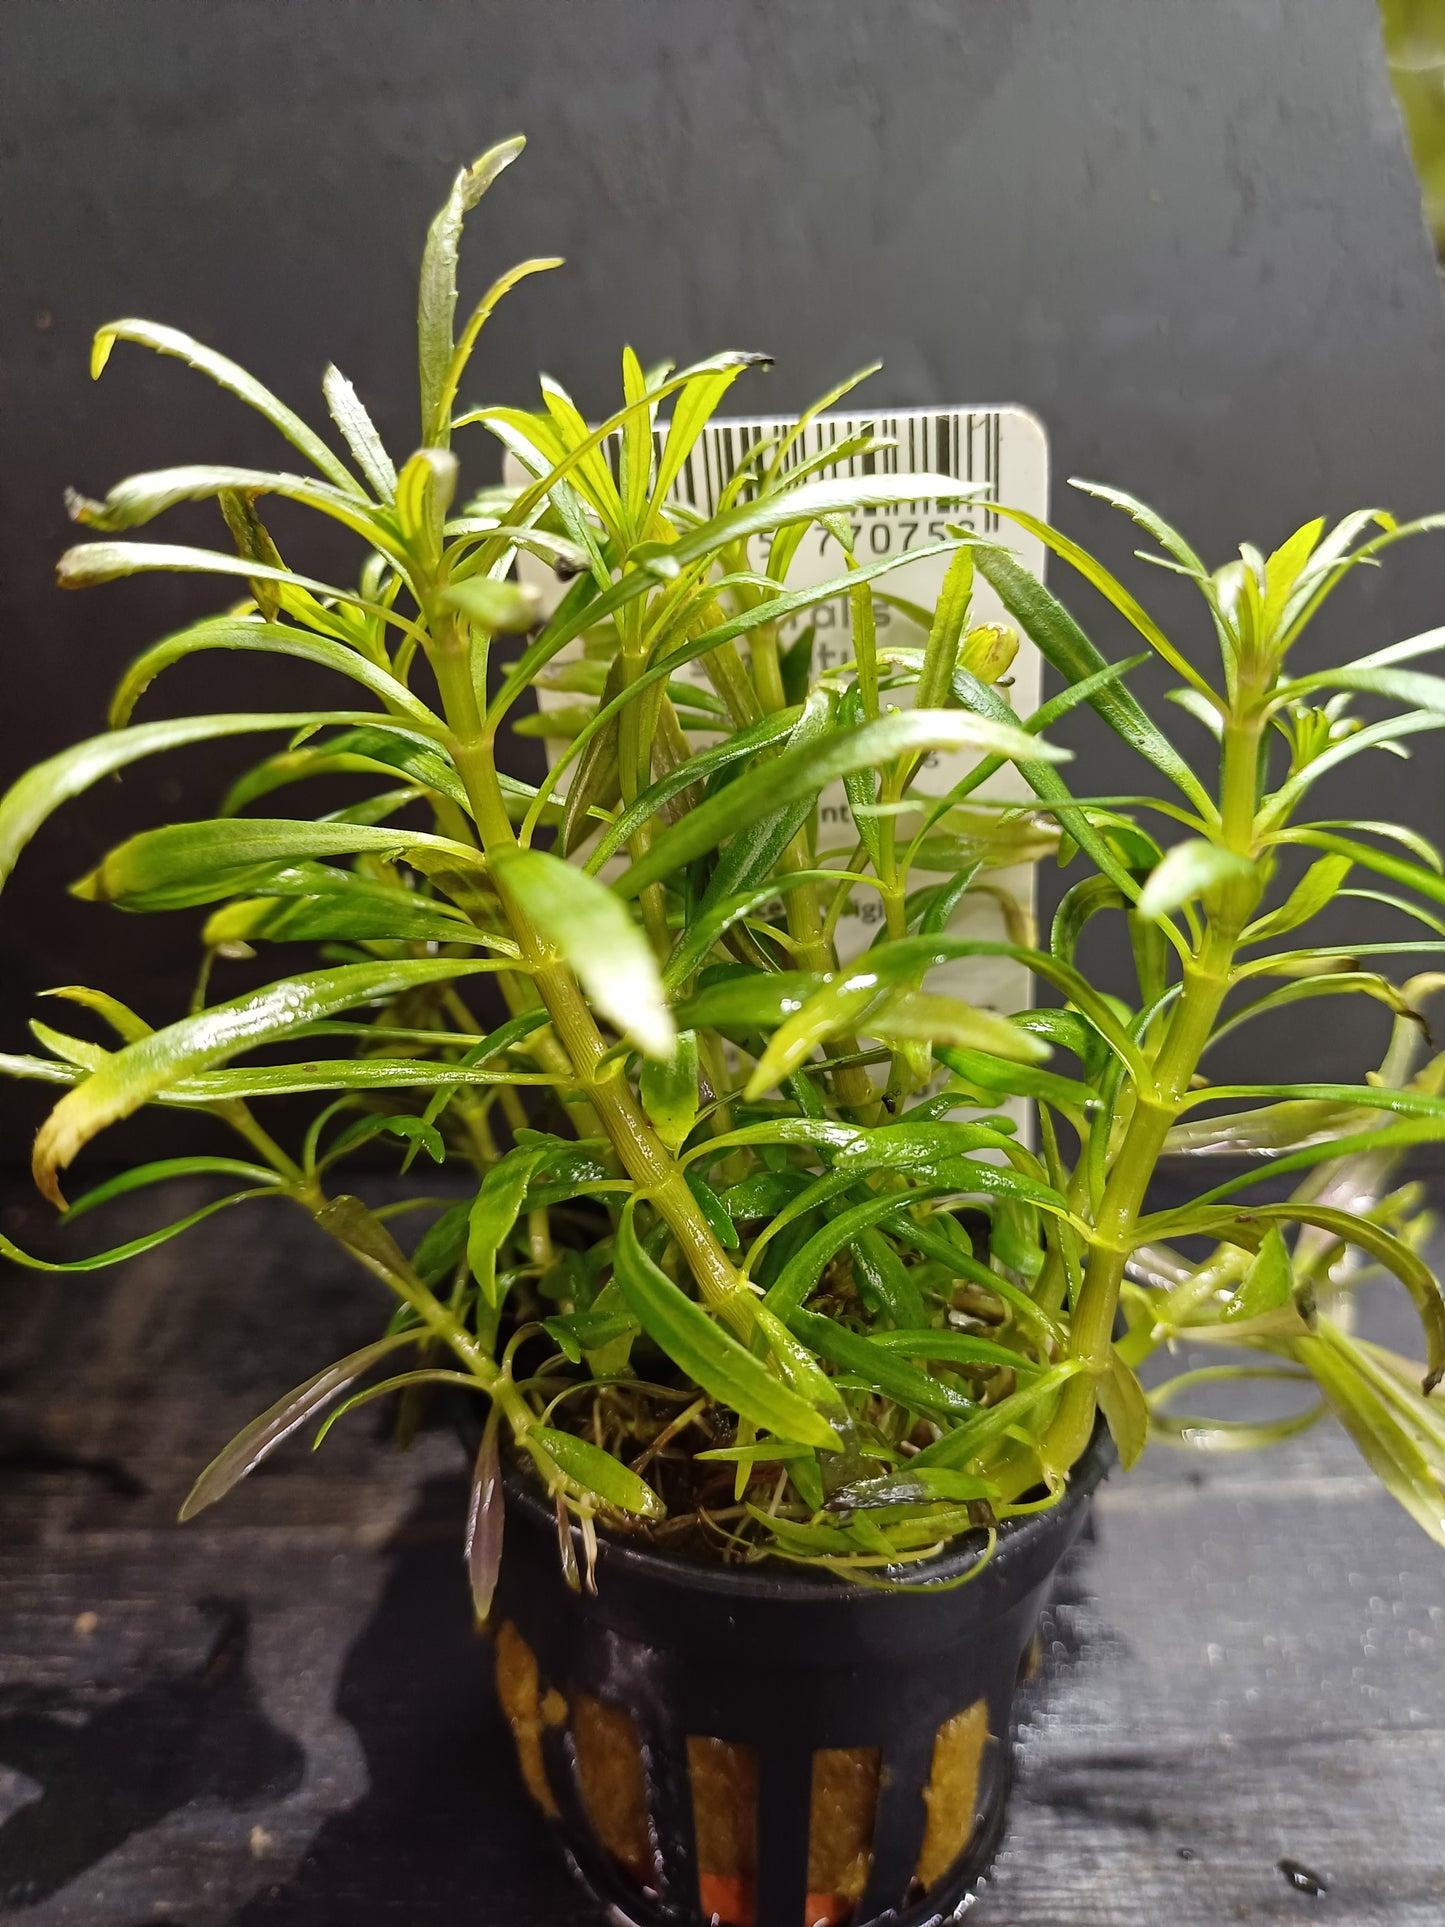 Eustralis stellata  - 5cm pot - EU Grown